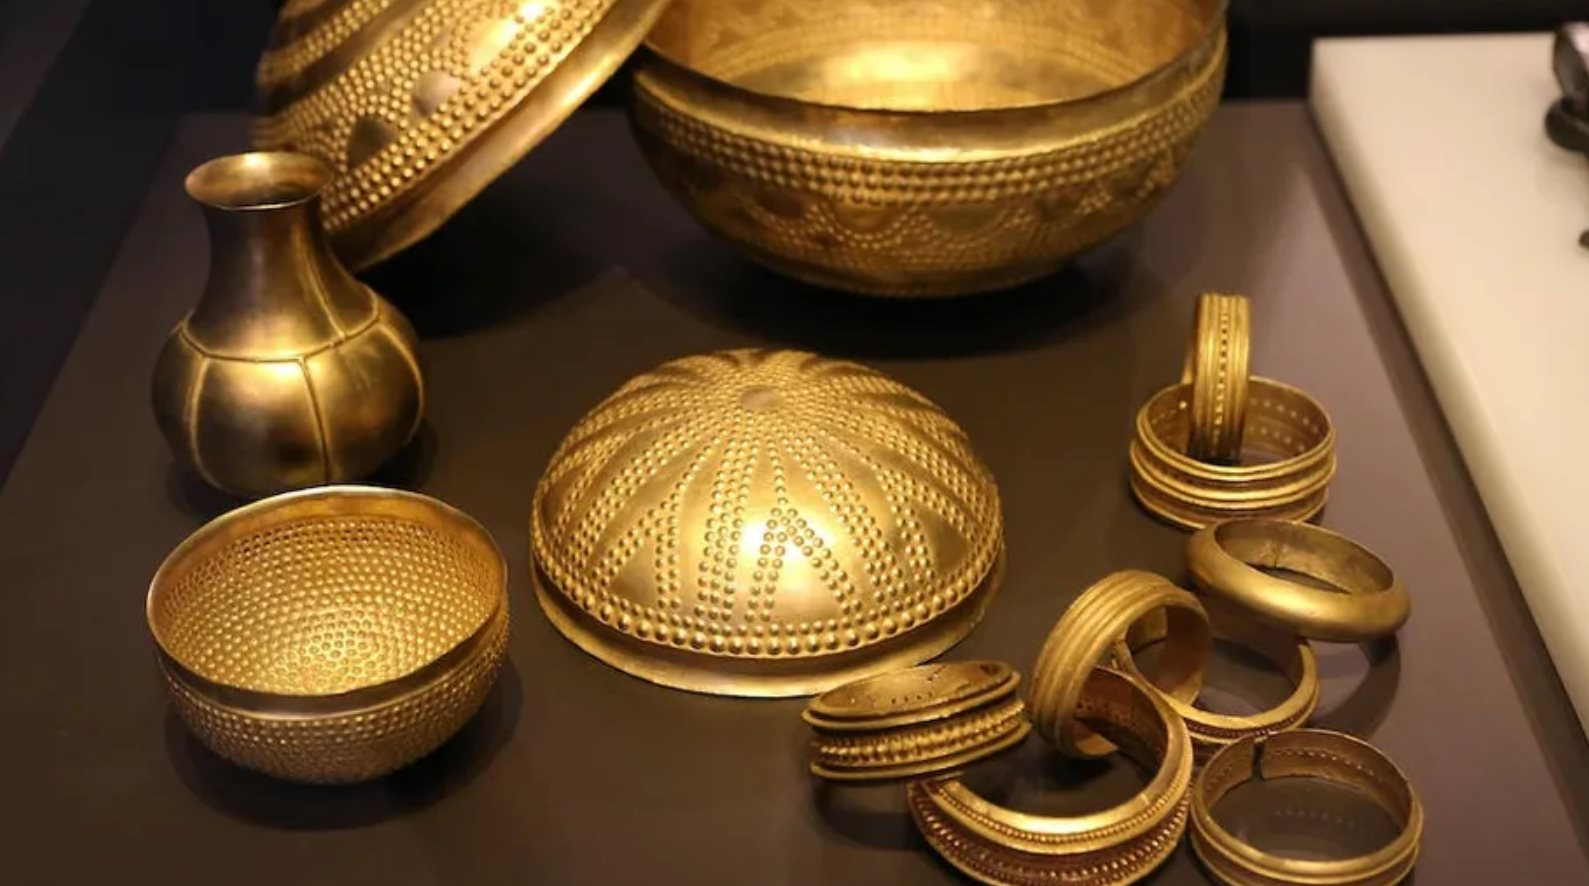 Phát hiện 2 vật thể bằng sắt nằm giữa kho vàng nghìn năm tuổi: Còn quý hơn cả vàng